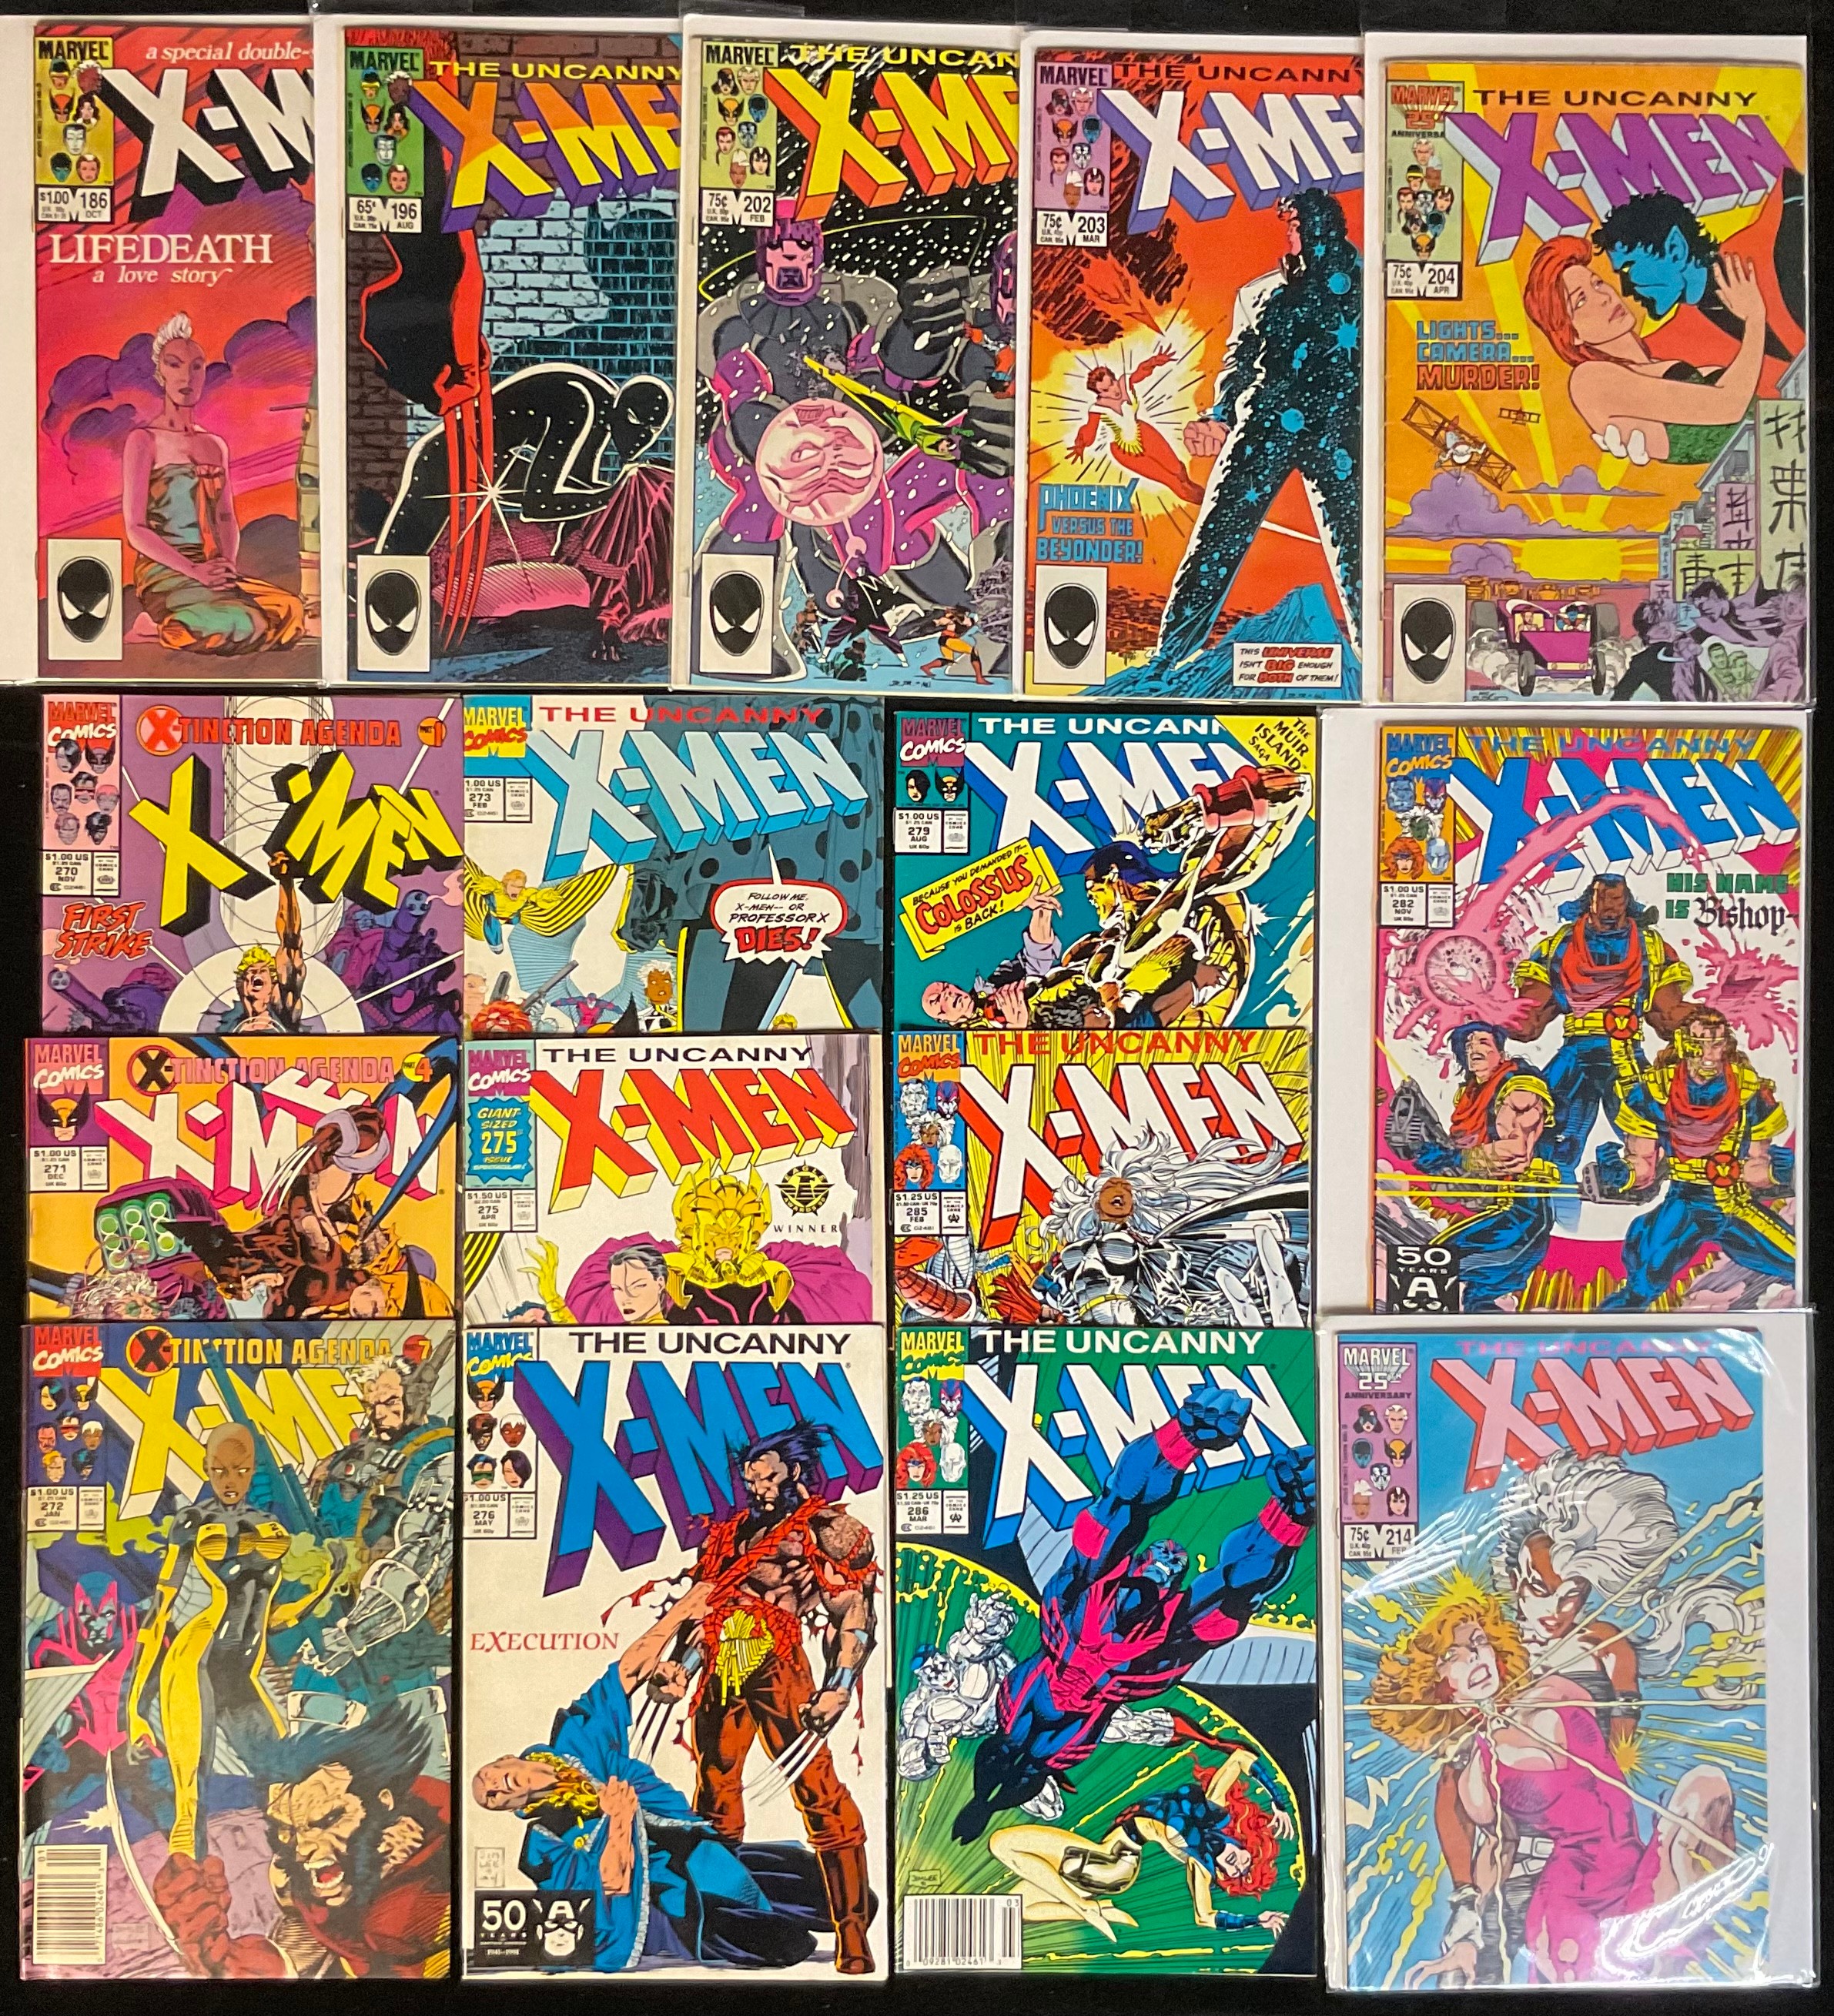 16 X-Men Comics. Uncanny X-Men #186, #196, #202-204, #214, #270-273, #275, #276, #279, #282(1st app